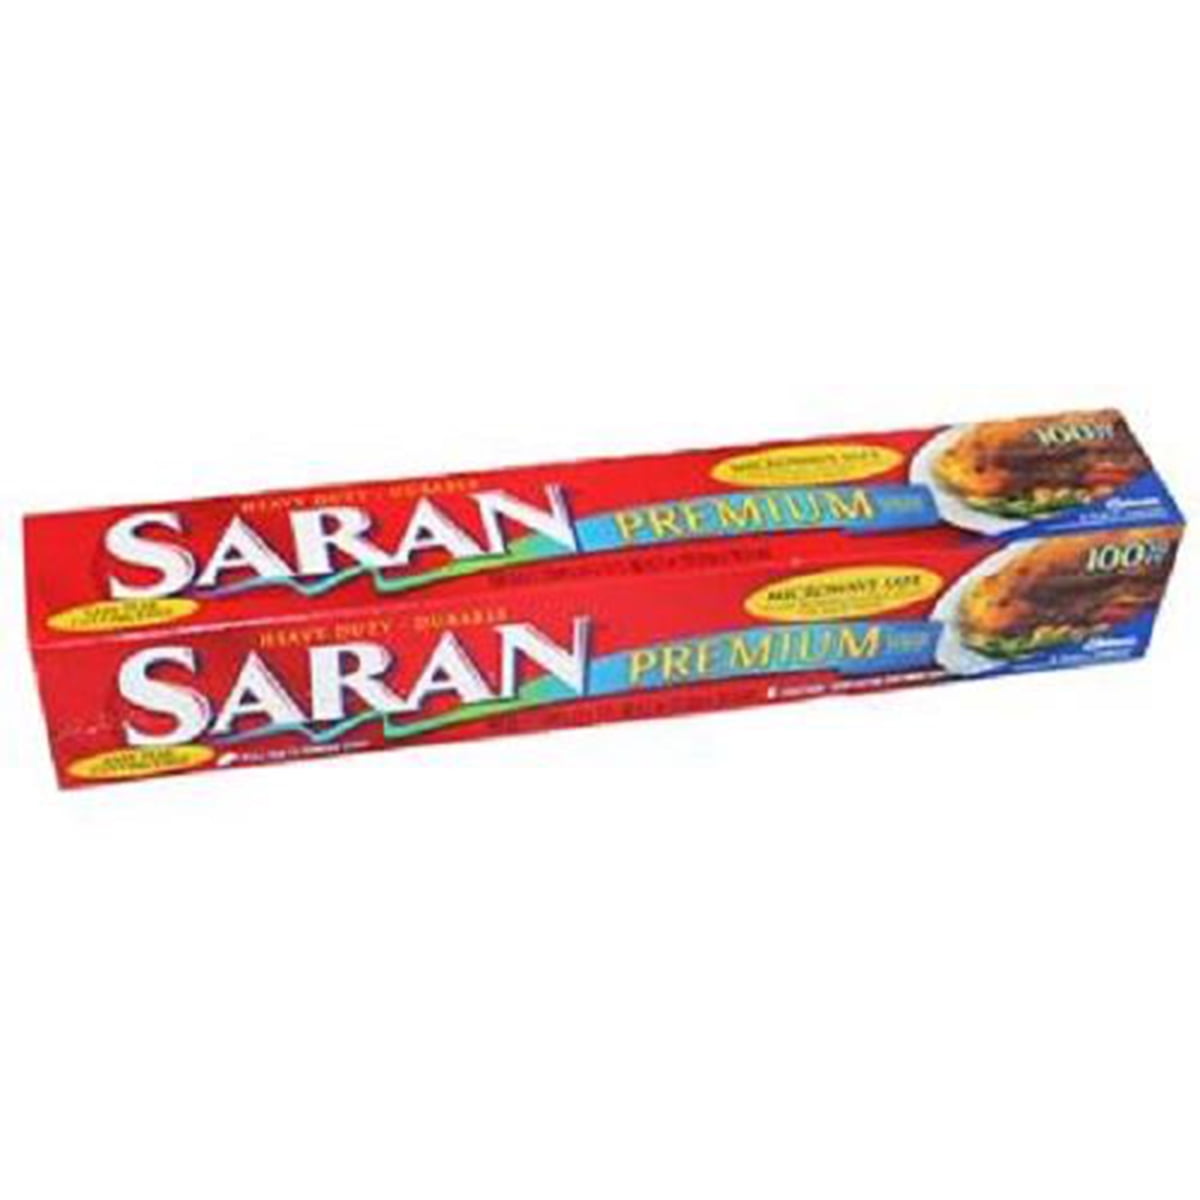 Saran Premium Plastic Wrap, Clear, 100